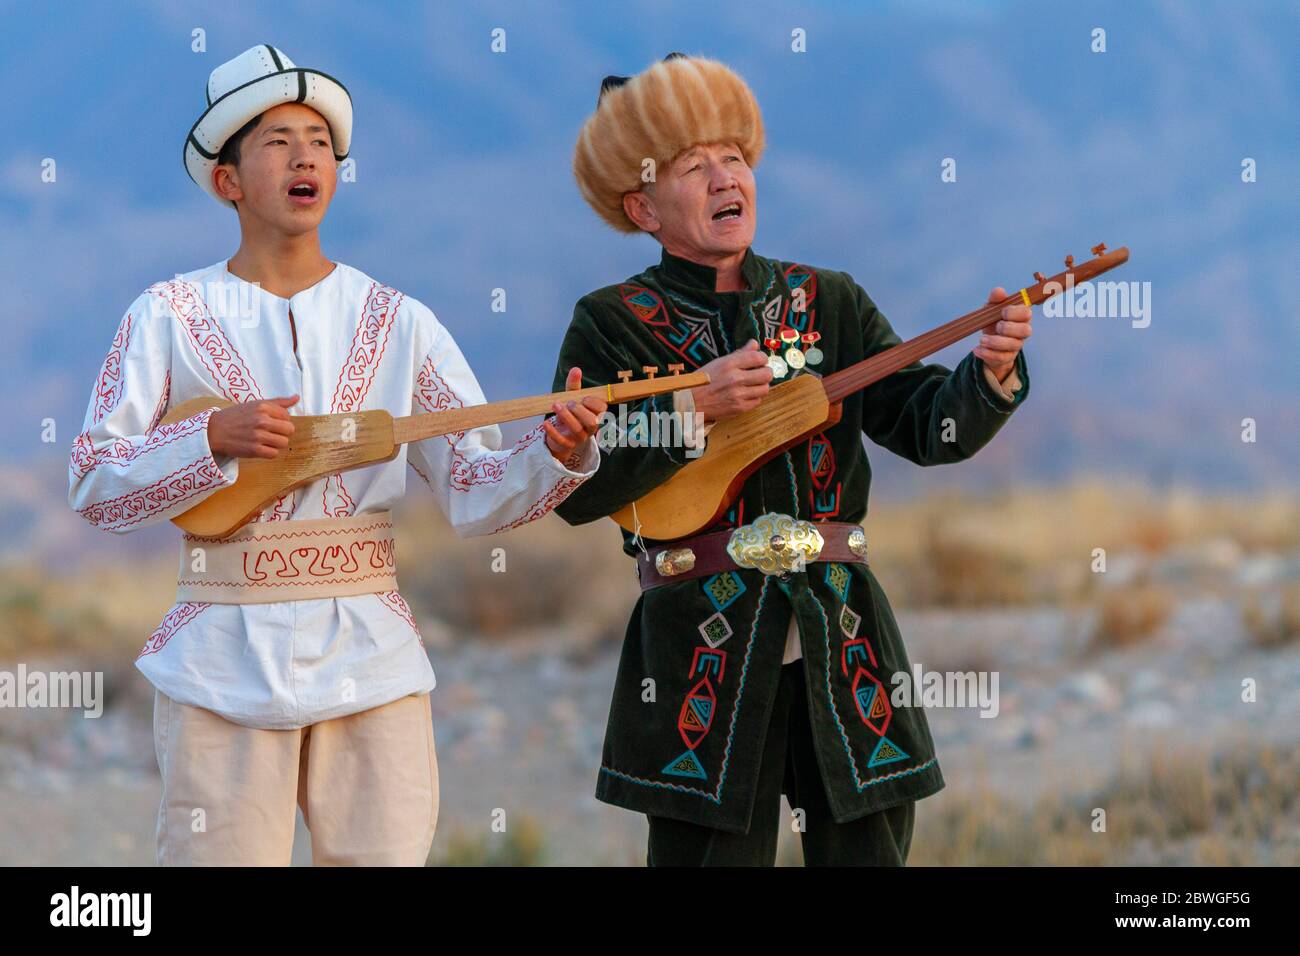 Musiciens kirghizes jouant un instrument de musique traditionnel connu sous le nom de Komuz, à Issyik Kul, Kirghizistan Banque D'Images